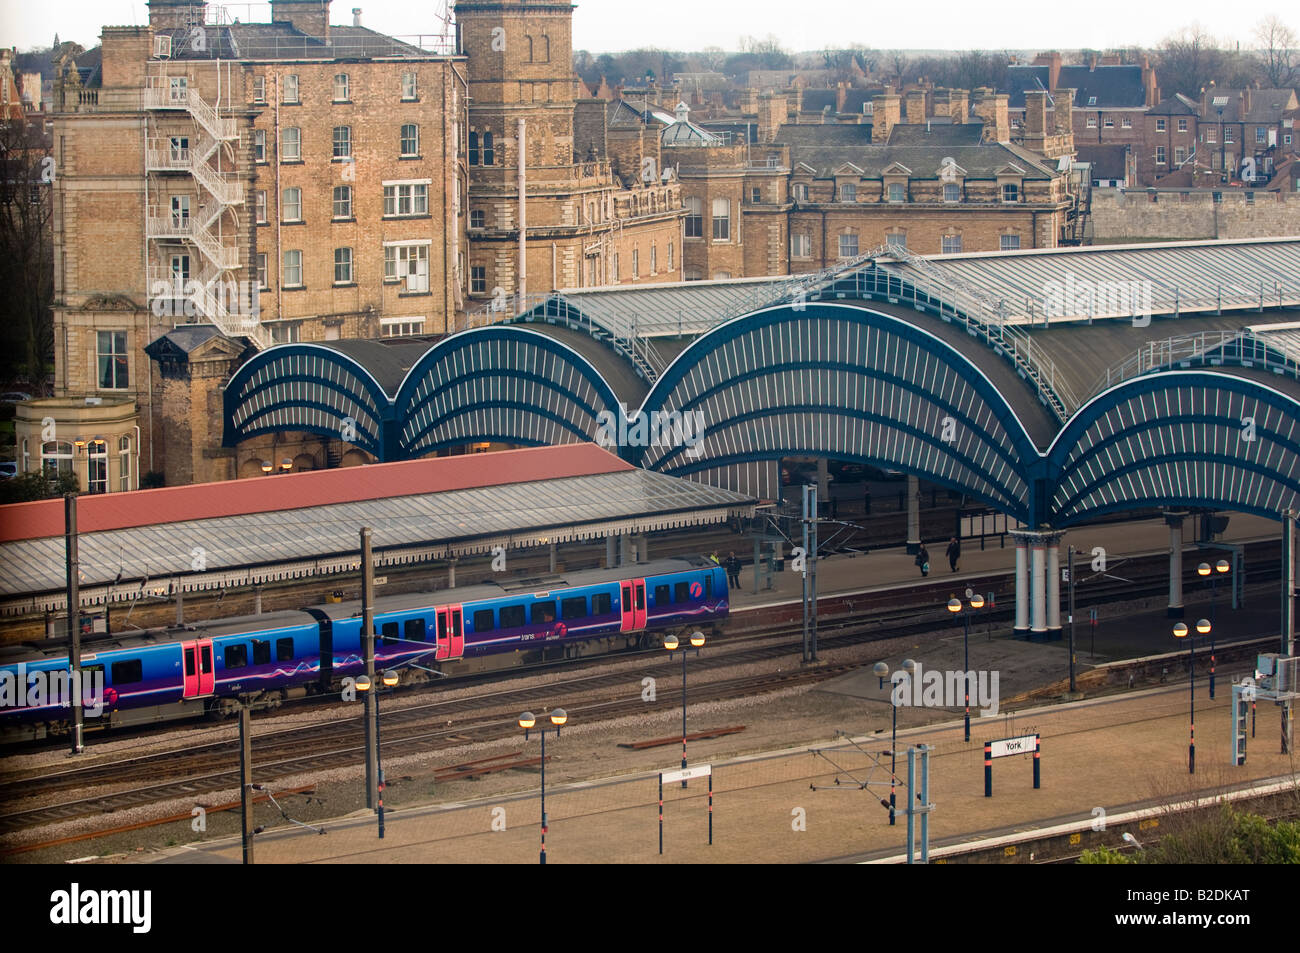 Vista elevada de las plataformas de la estación de York con sus techos curvos. York. REINO UNIDO Foto de stock